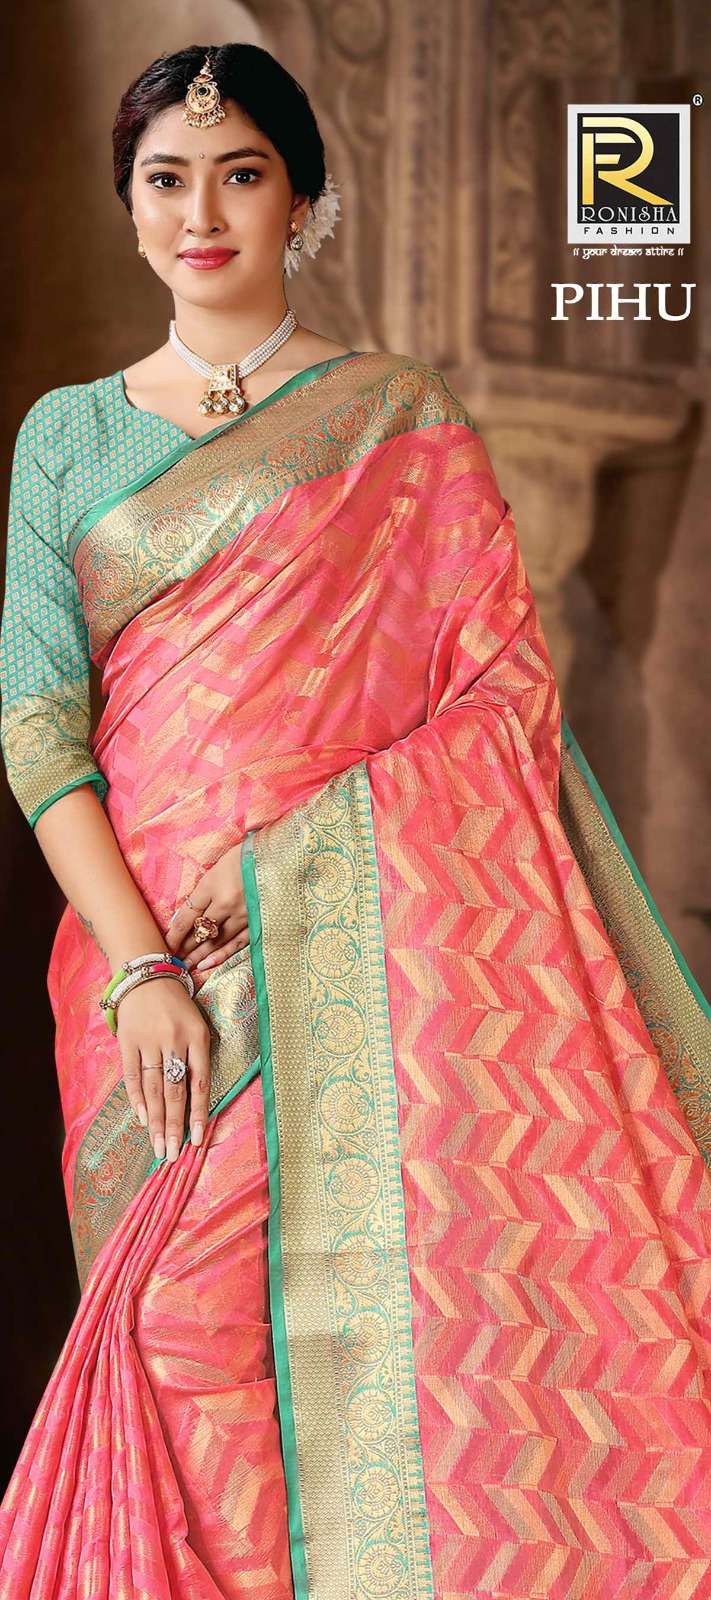 Pihu by Ranjna saree Banarsi silk exclusive saree collection